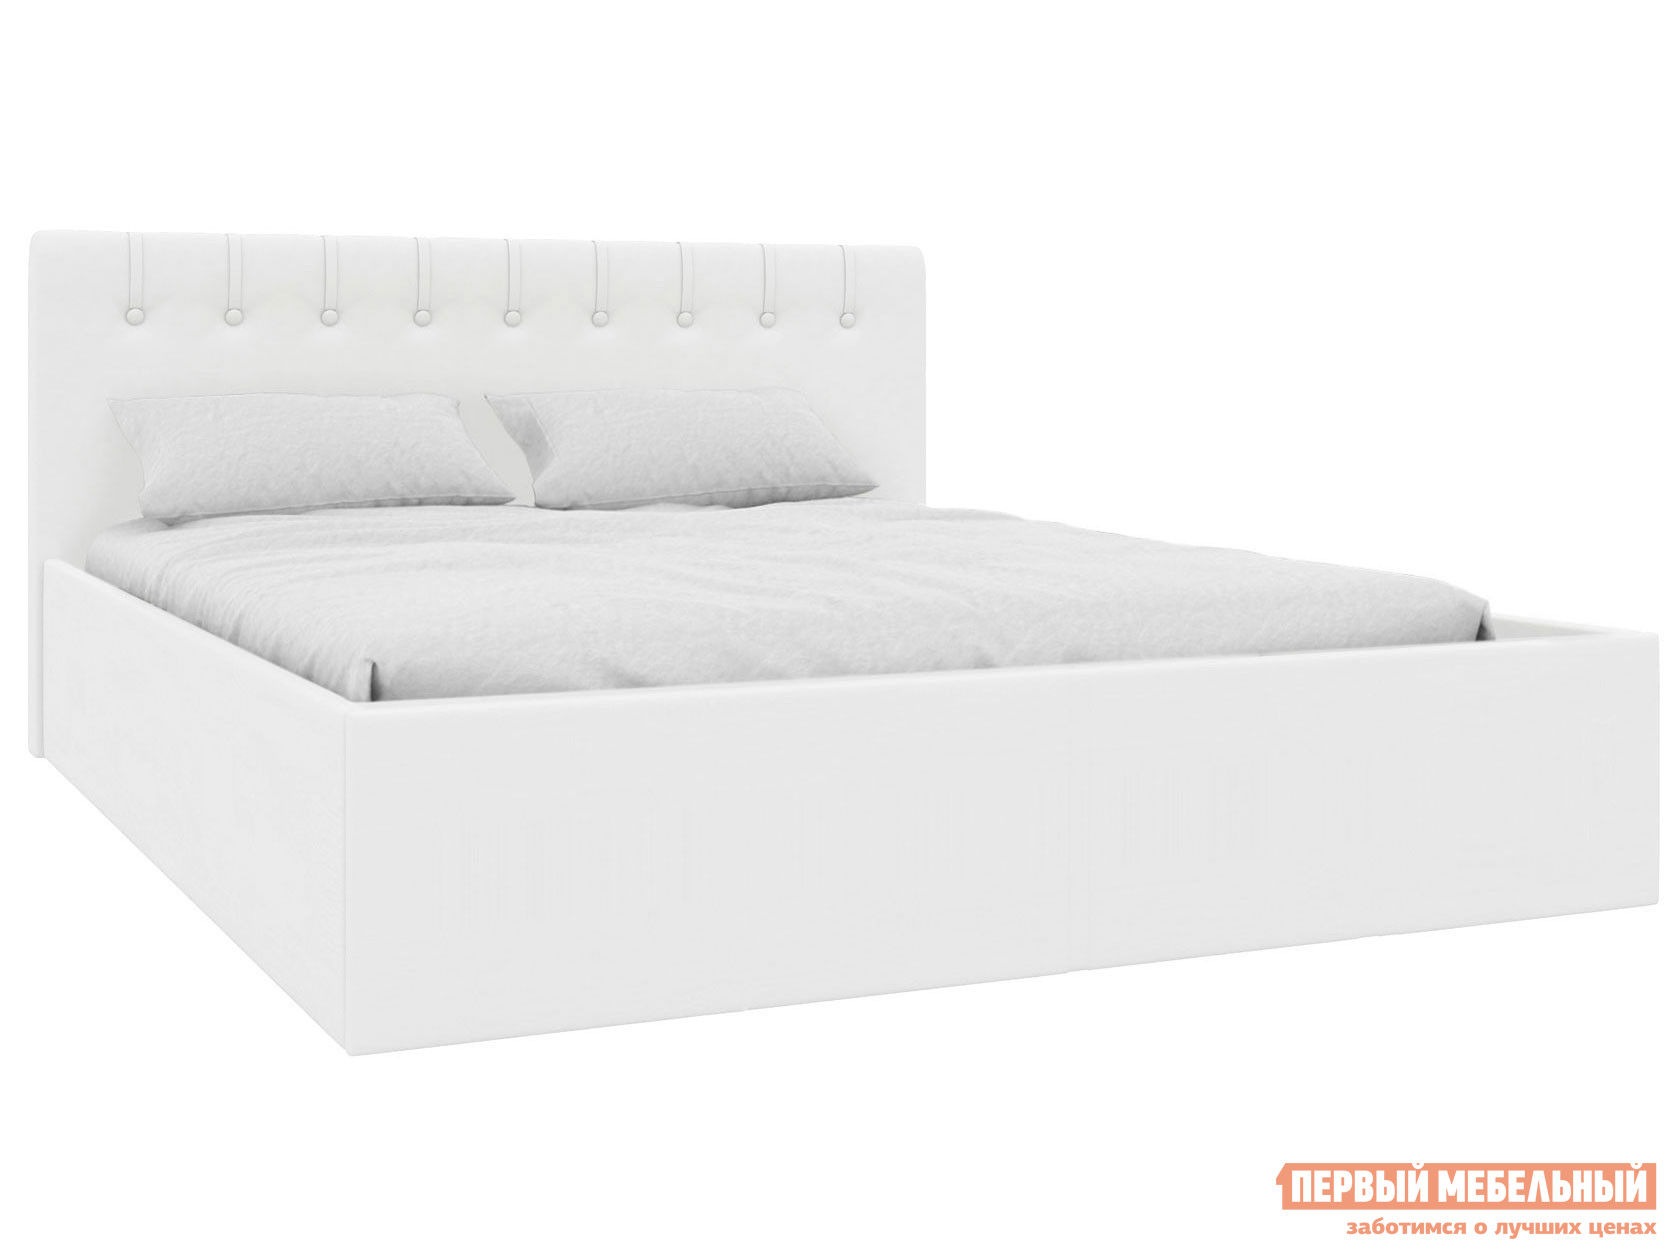 Двуспальная кровать  Скания Люкс Белый, экокожа, С подъемным механизмом ЭтоМебель 148182